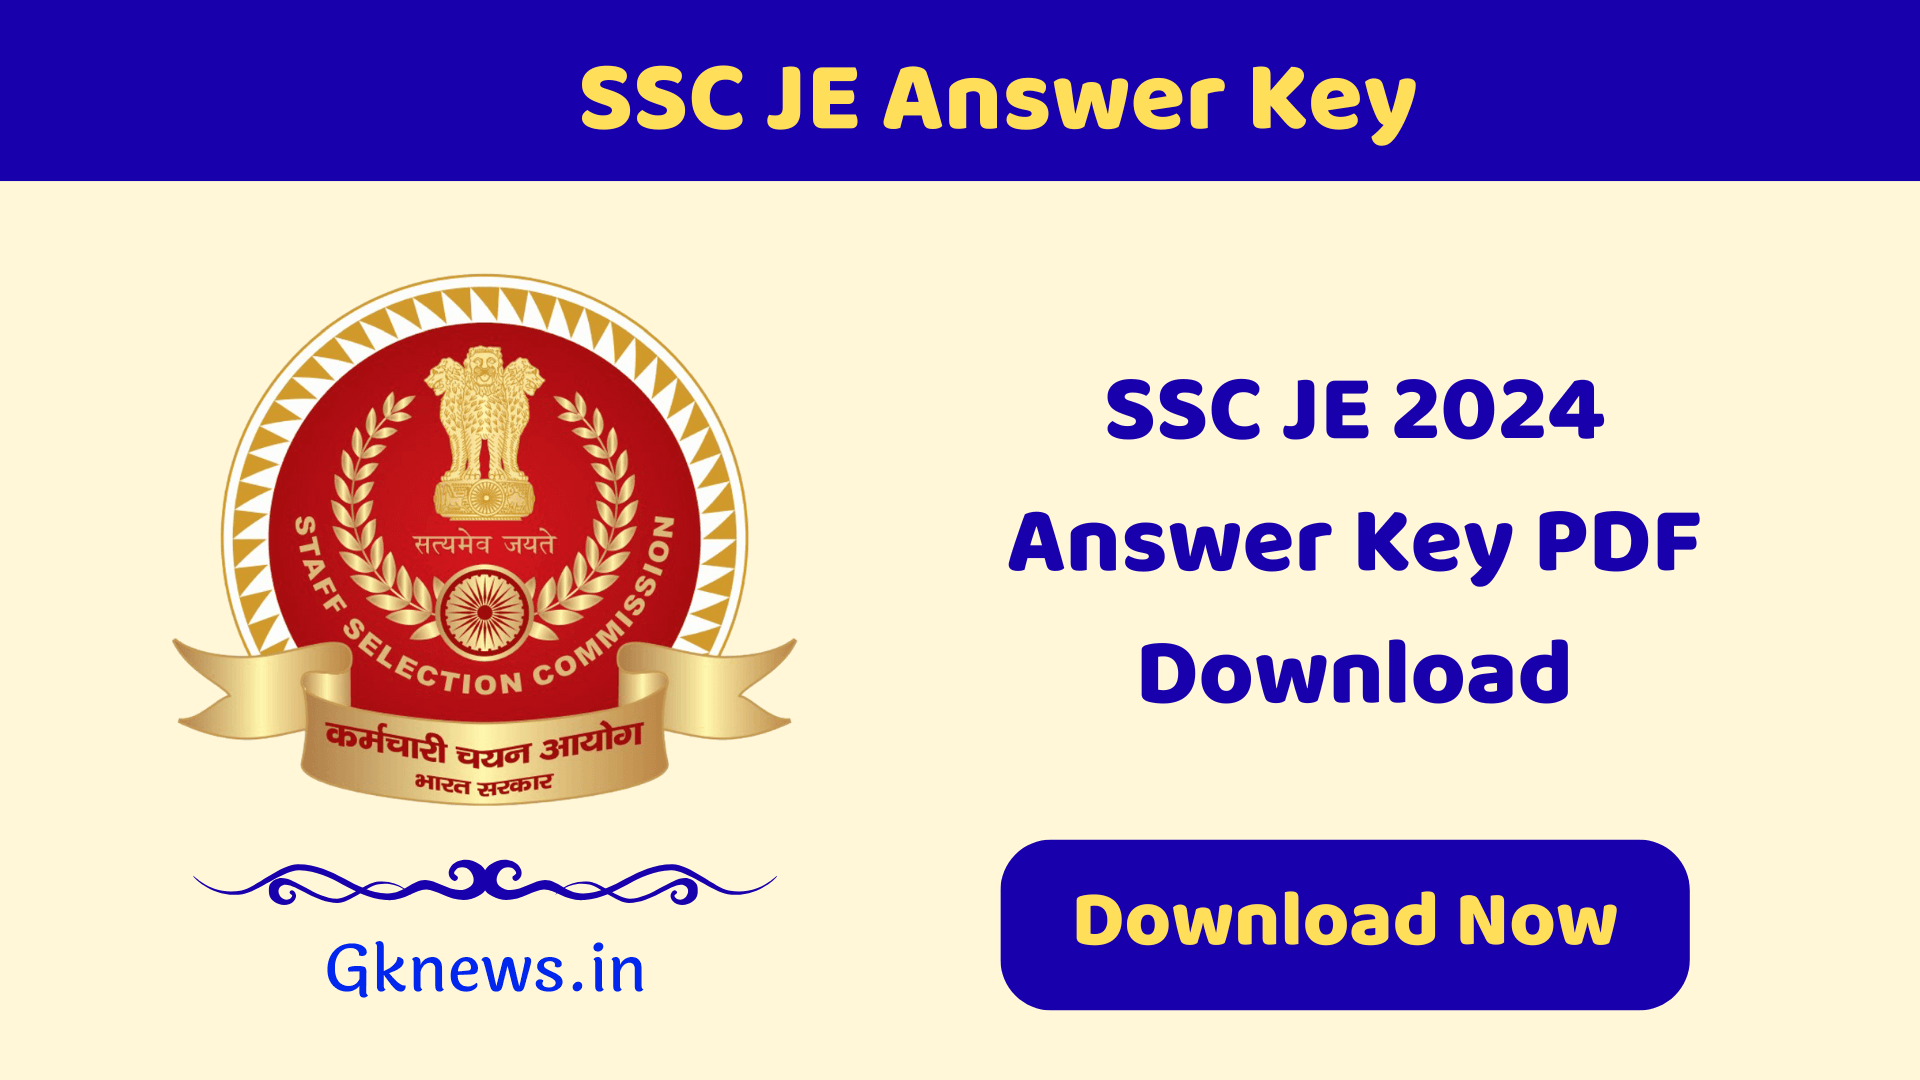 SSC JE Answer Key 2024